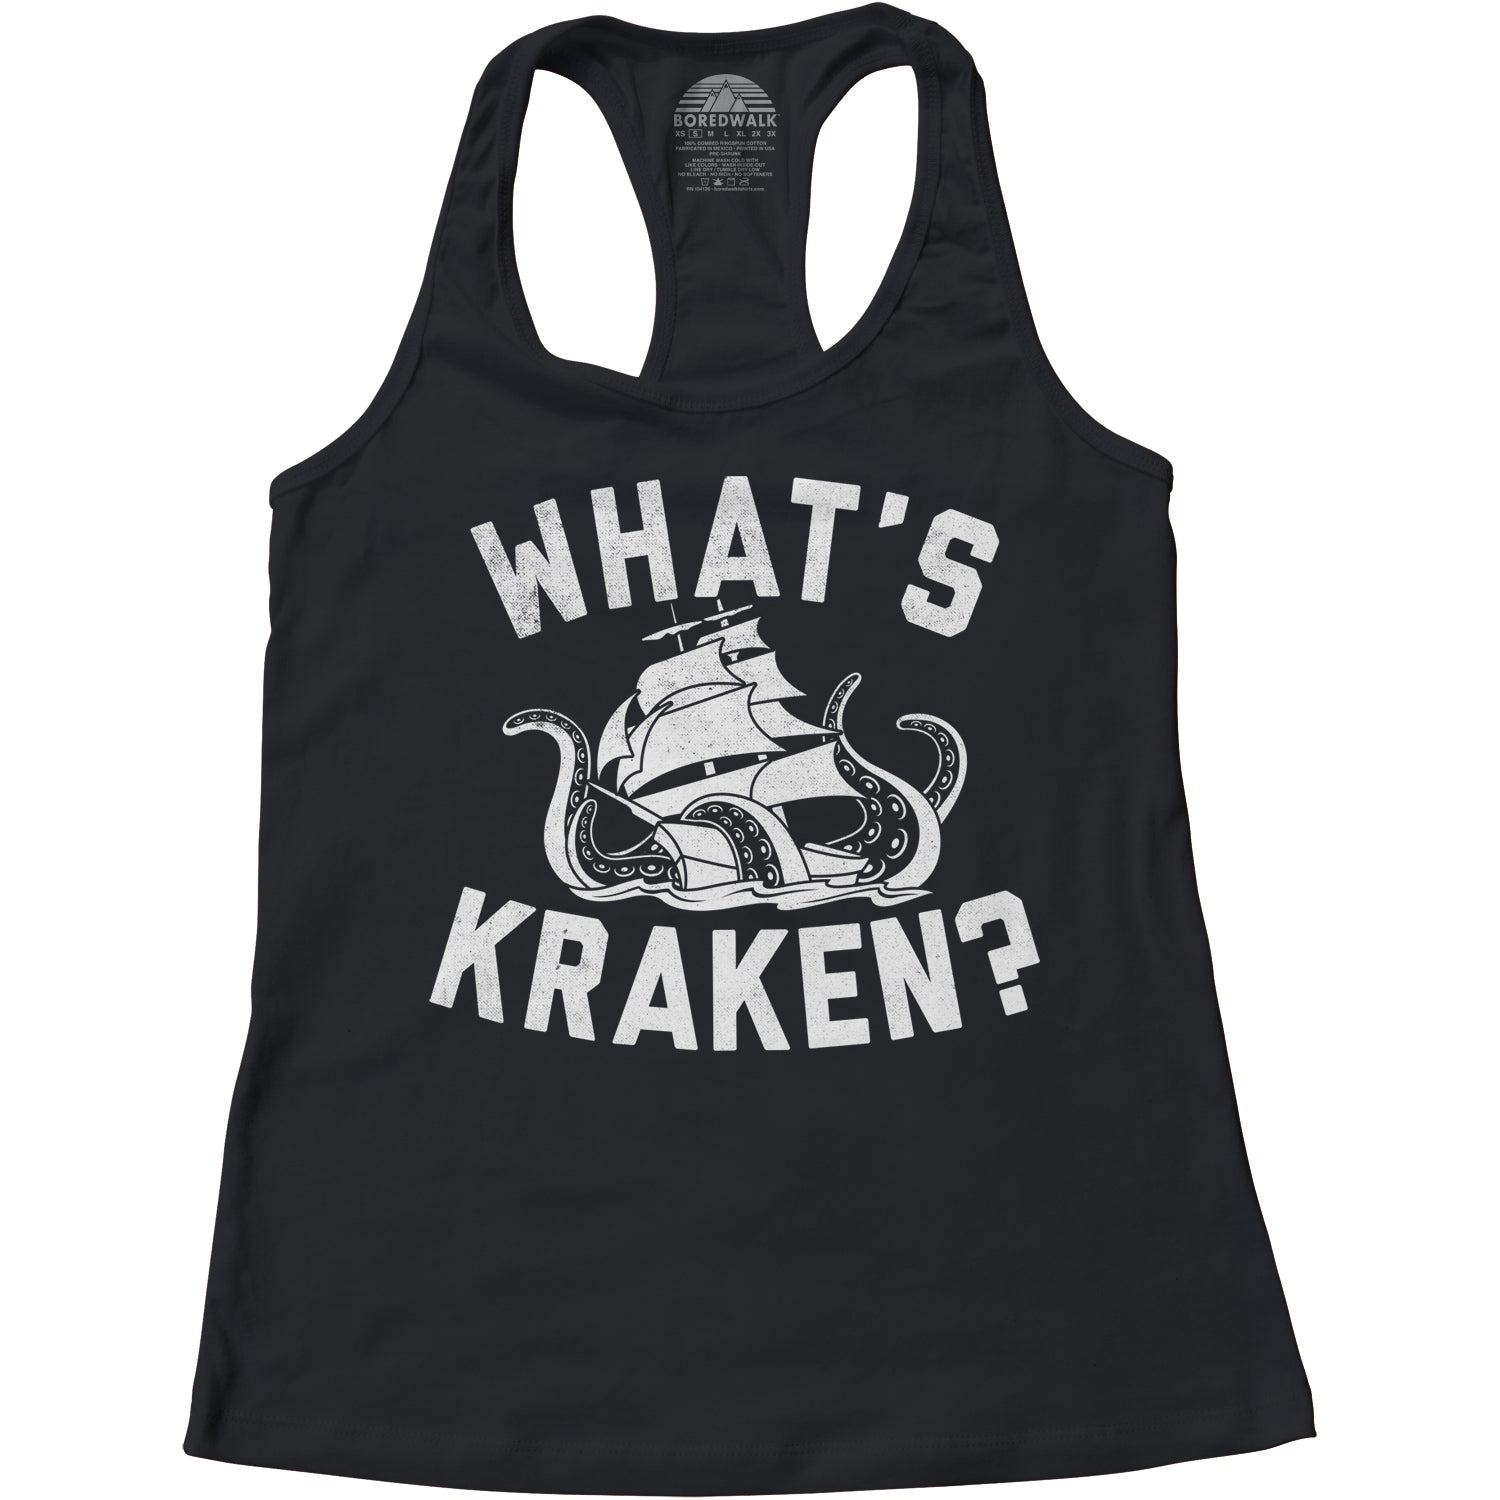 Women's What's Kraken Sea Monster Racerback Tank Top